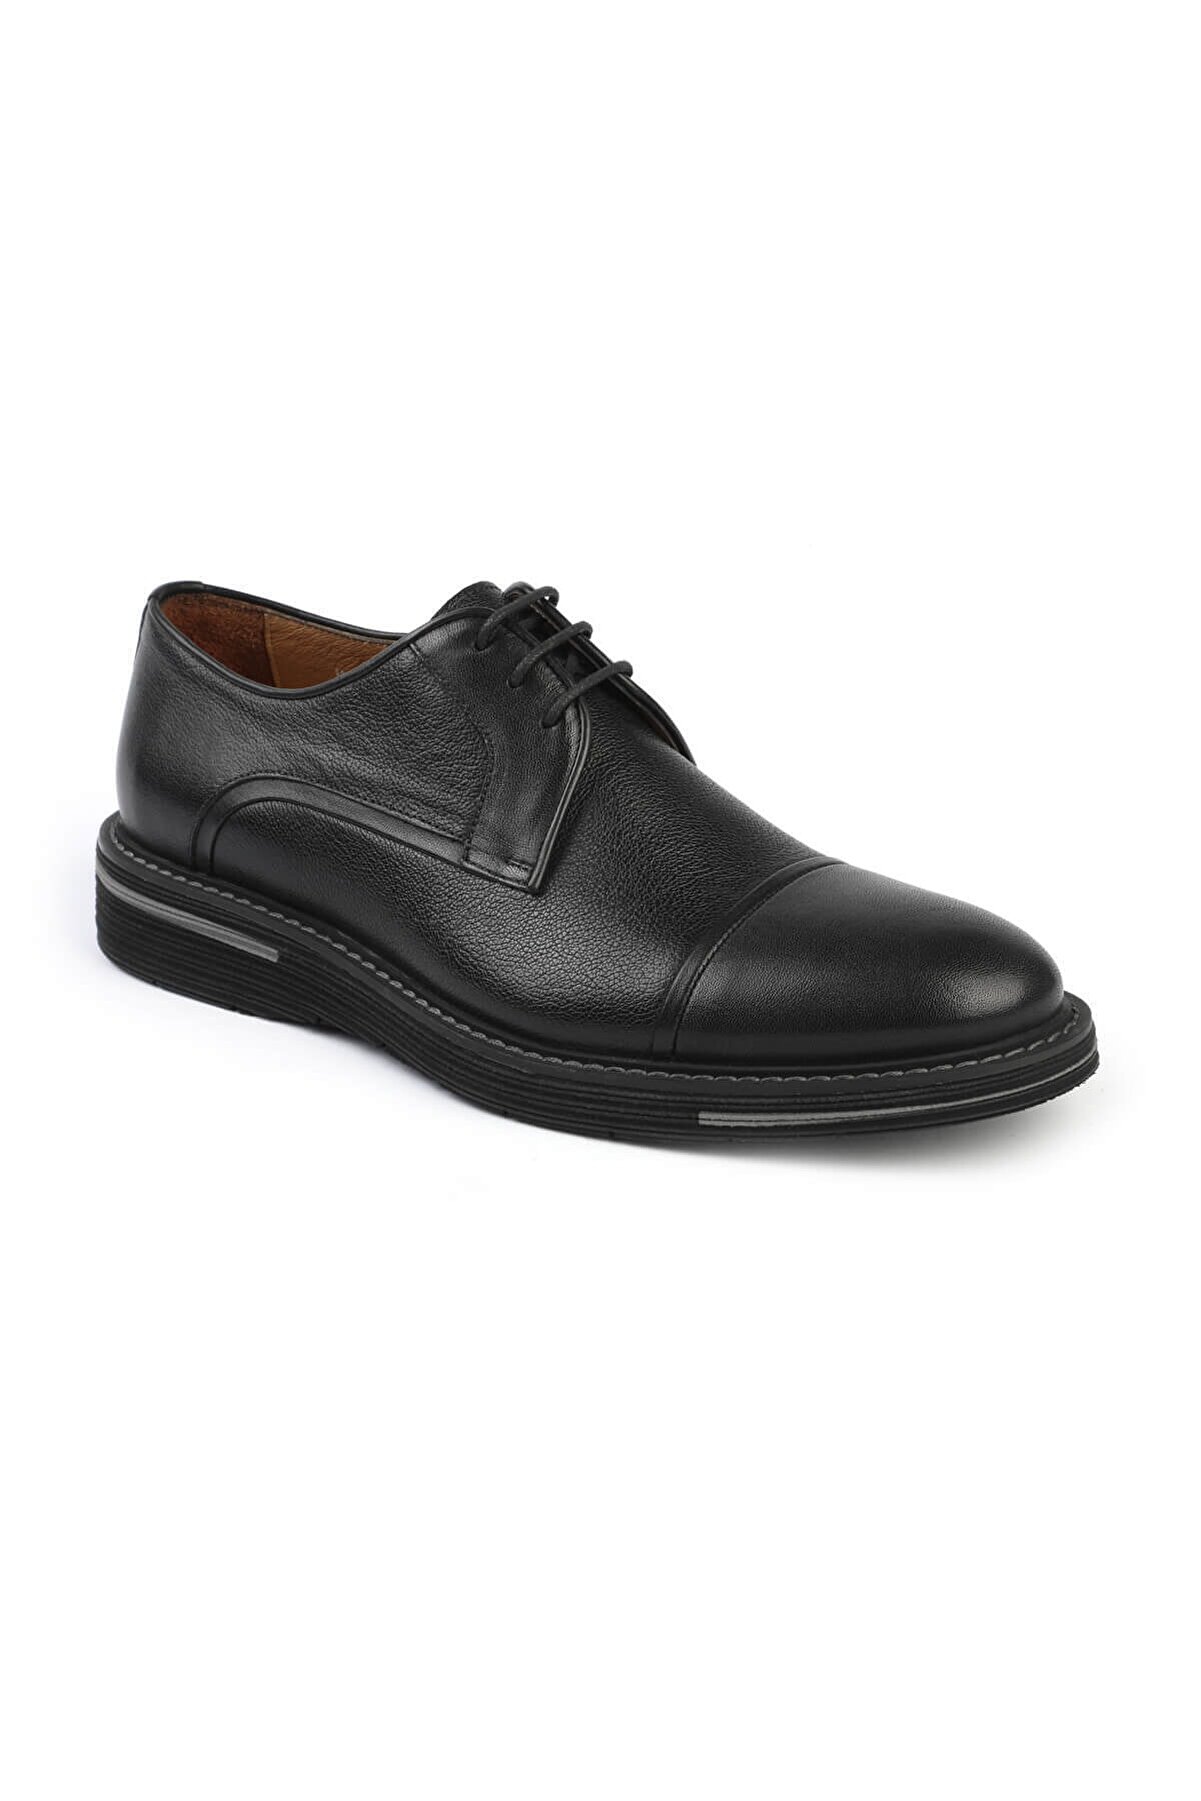 Libero 3136 Casual Erkek Ayakkabı Siyah